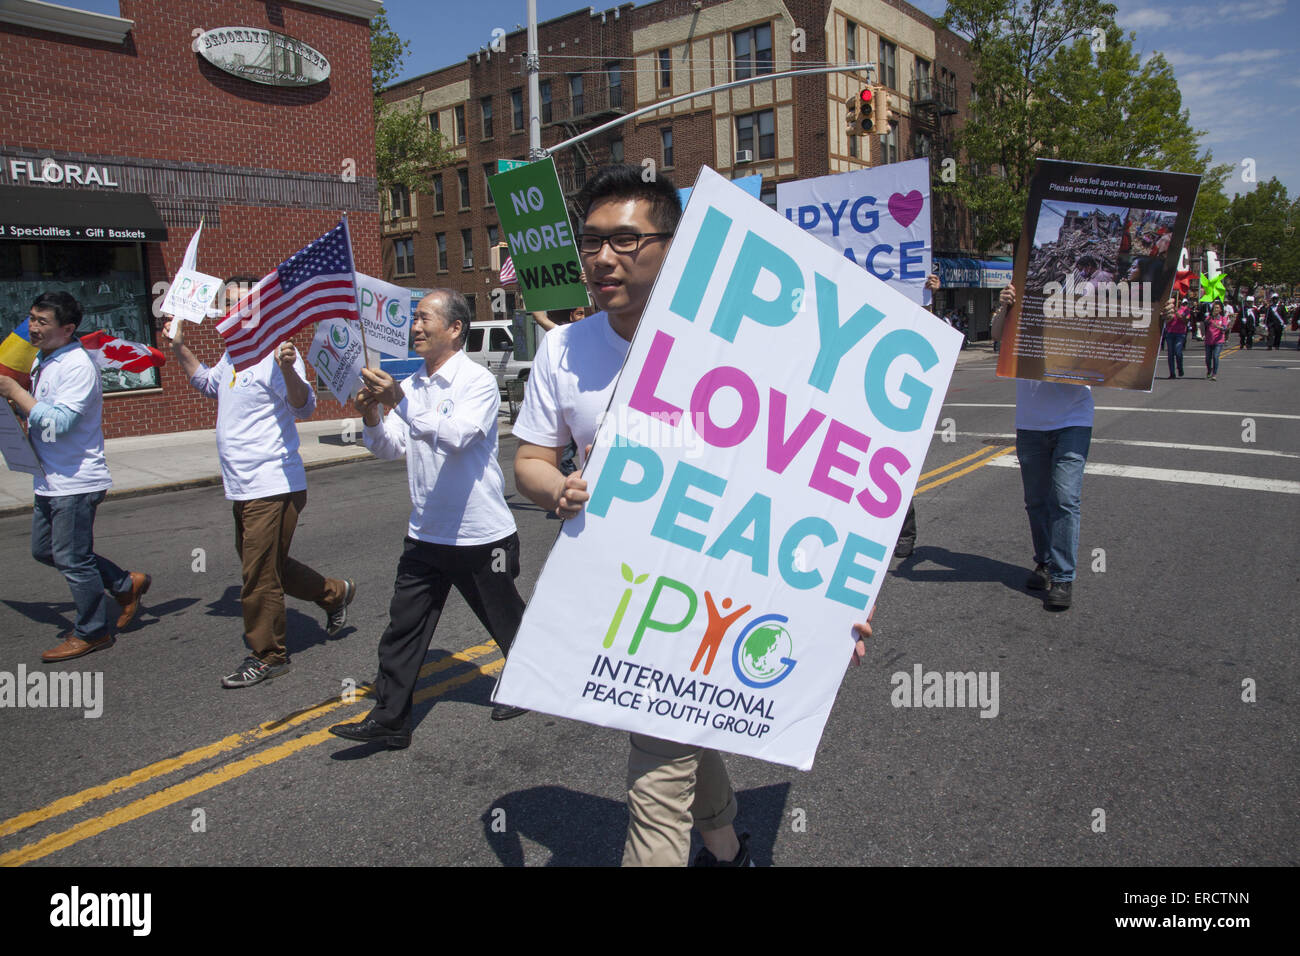 Grupo Juvenil Internacional de la paz de marzo en el Memorial Day Parade en Bay Ridge, Brooklyn defendiendo "No más guerra". Foto de stock